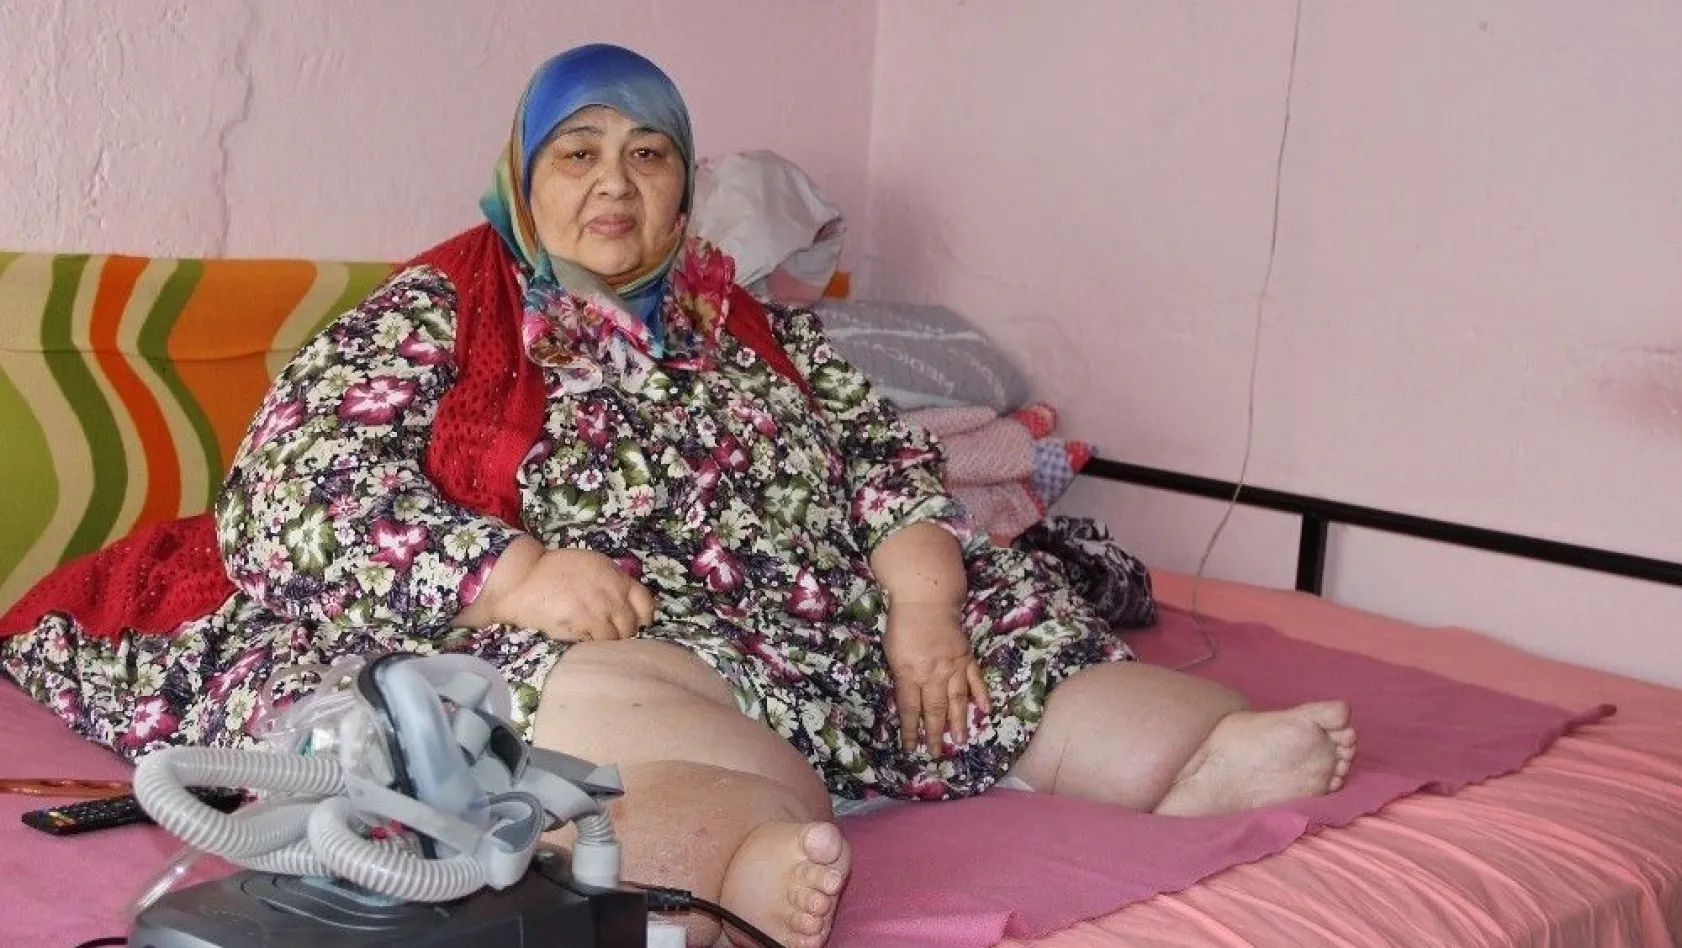 260 kilo ağırlığındaki kadın kilo verebilmek için yardım bekliyor
